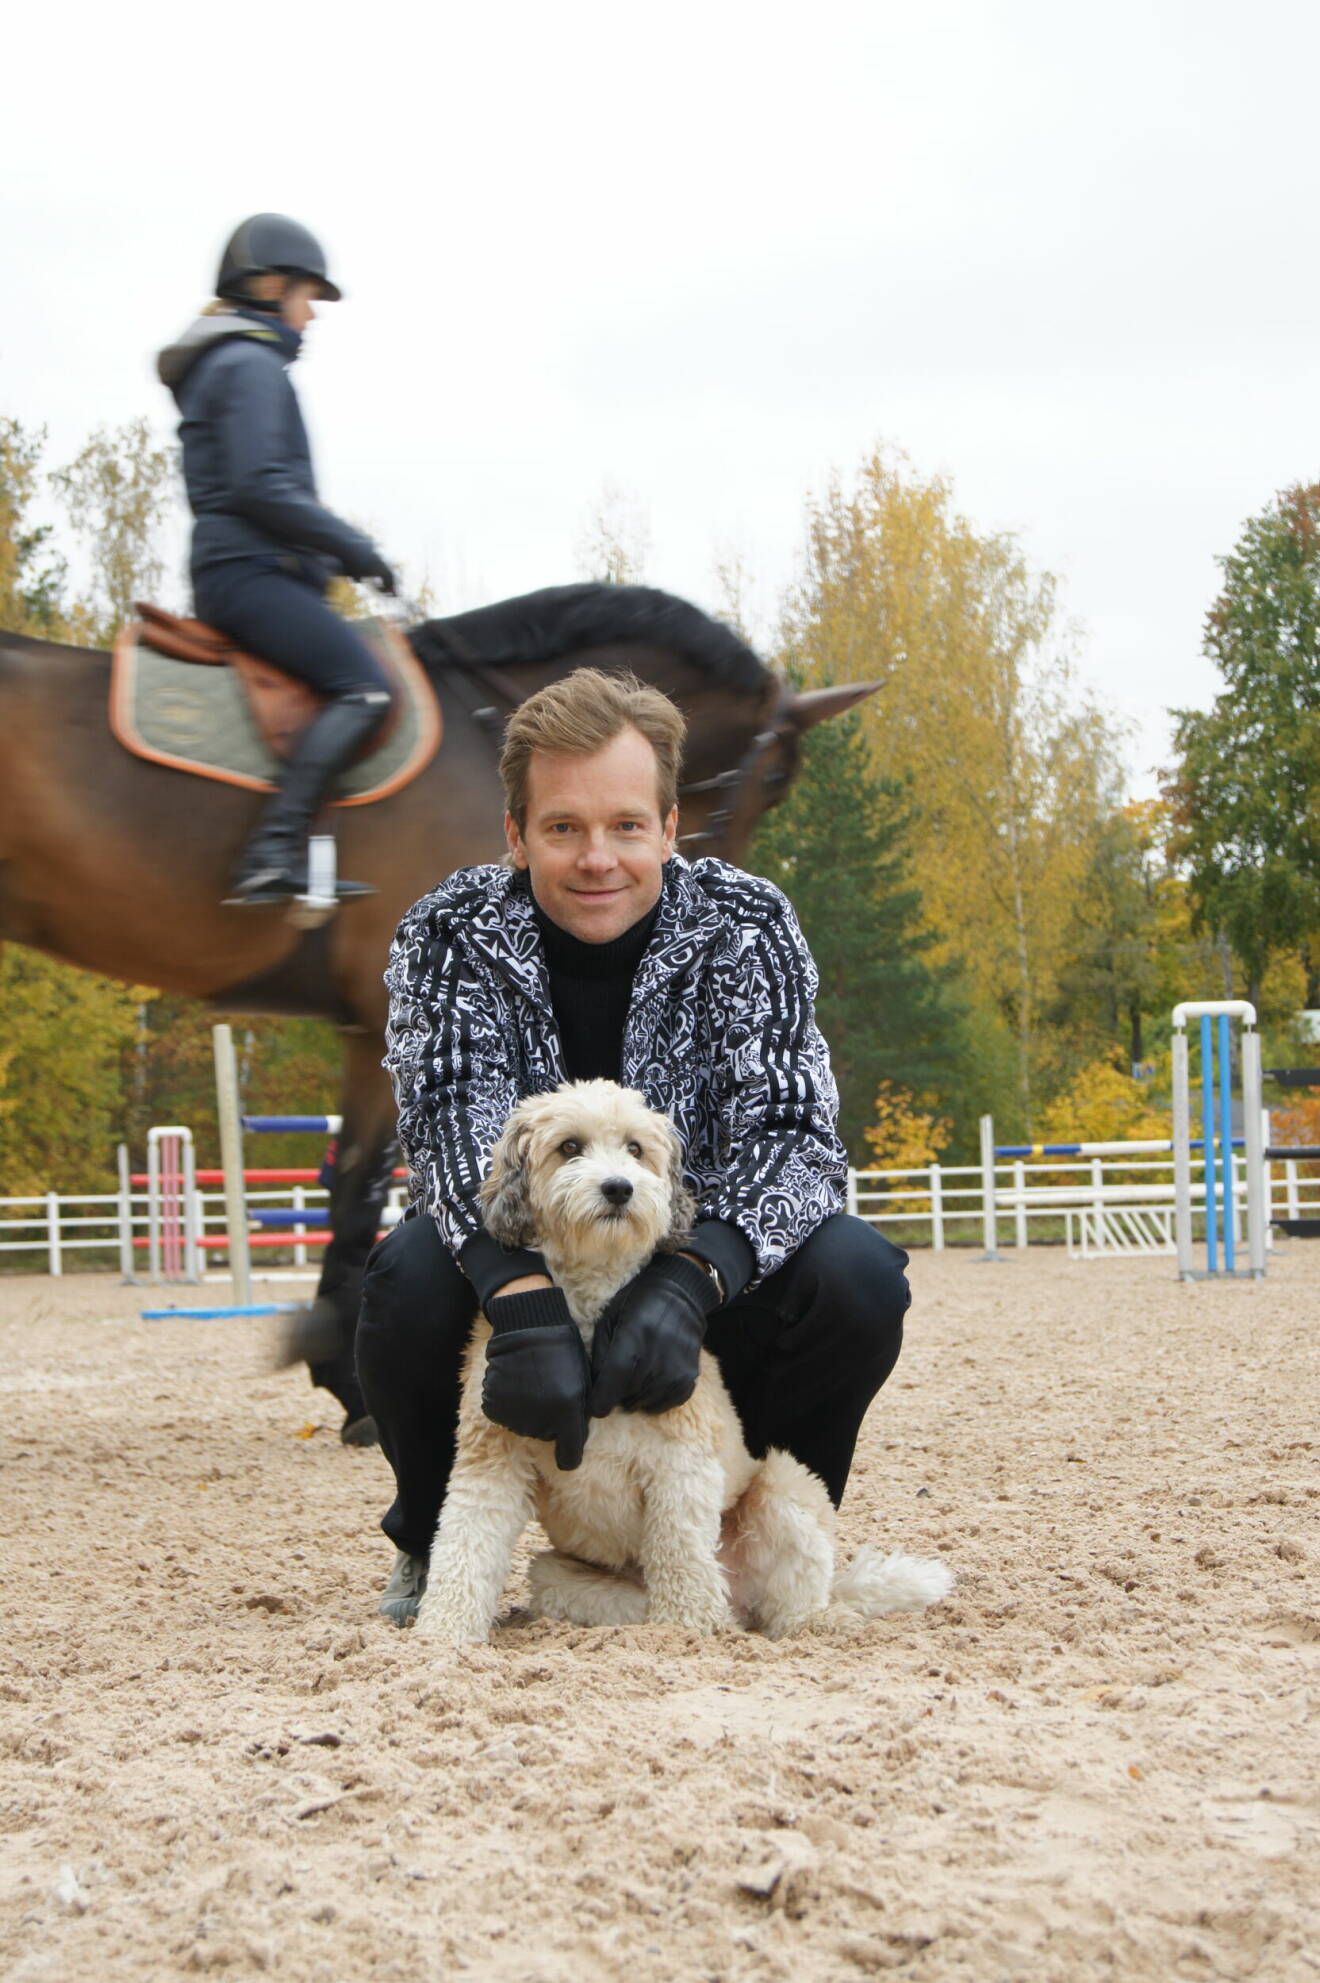 Henrik Johnsson på huk tillsammans med en hund, medan en häst passerar bakom honom.